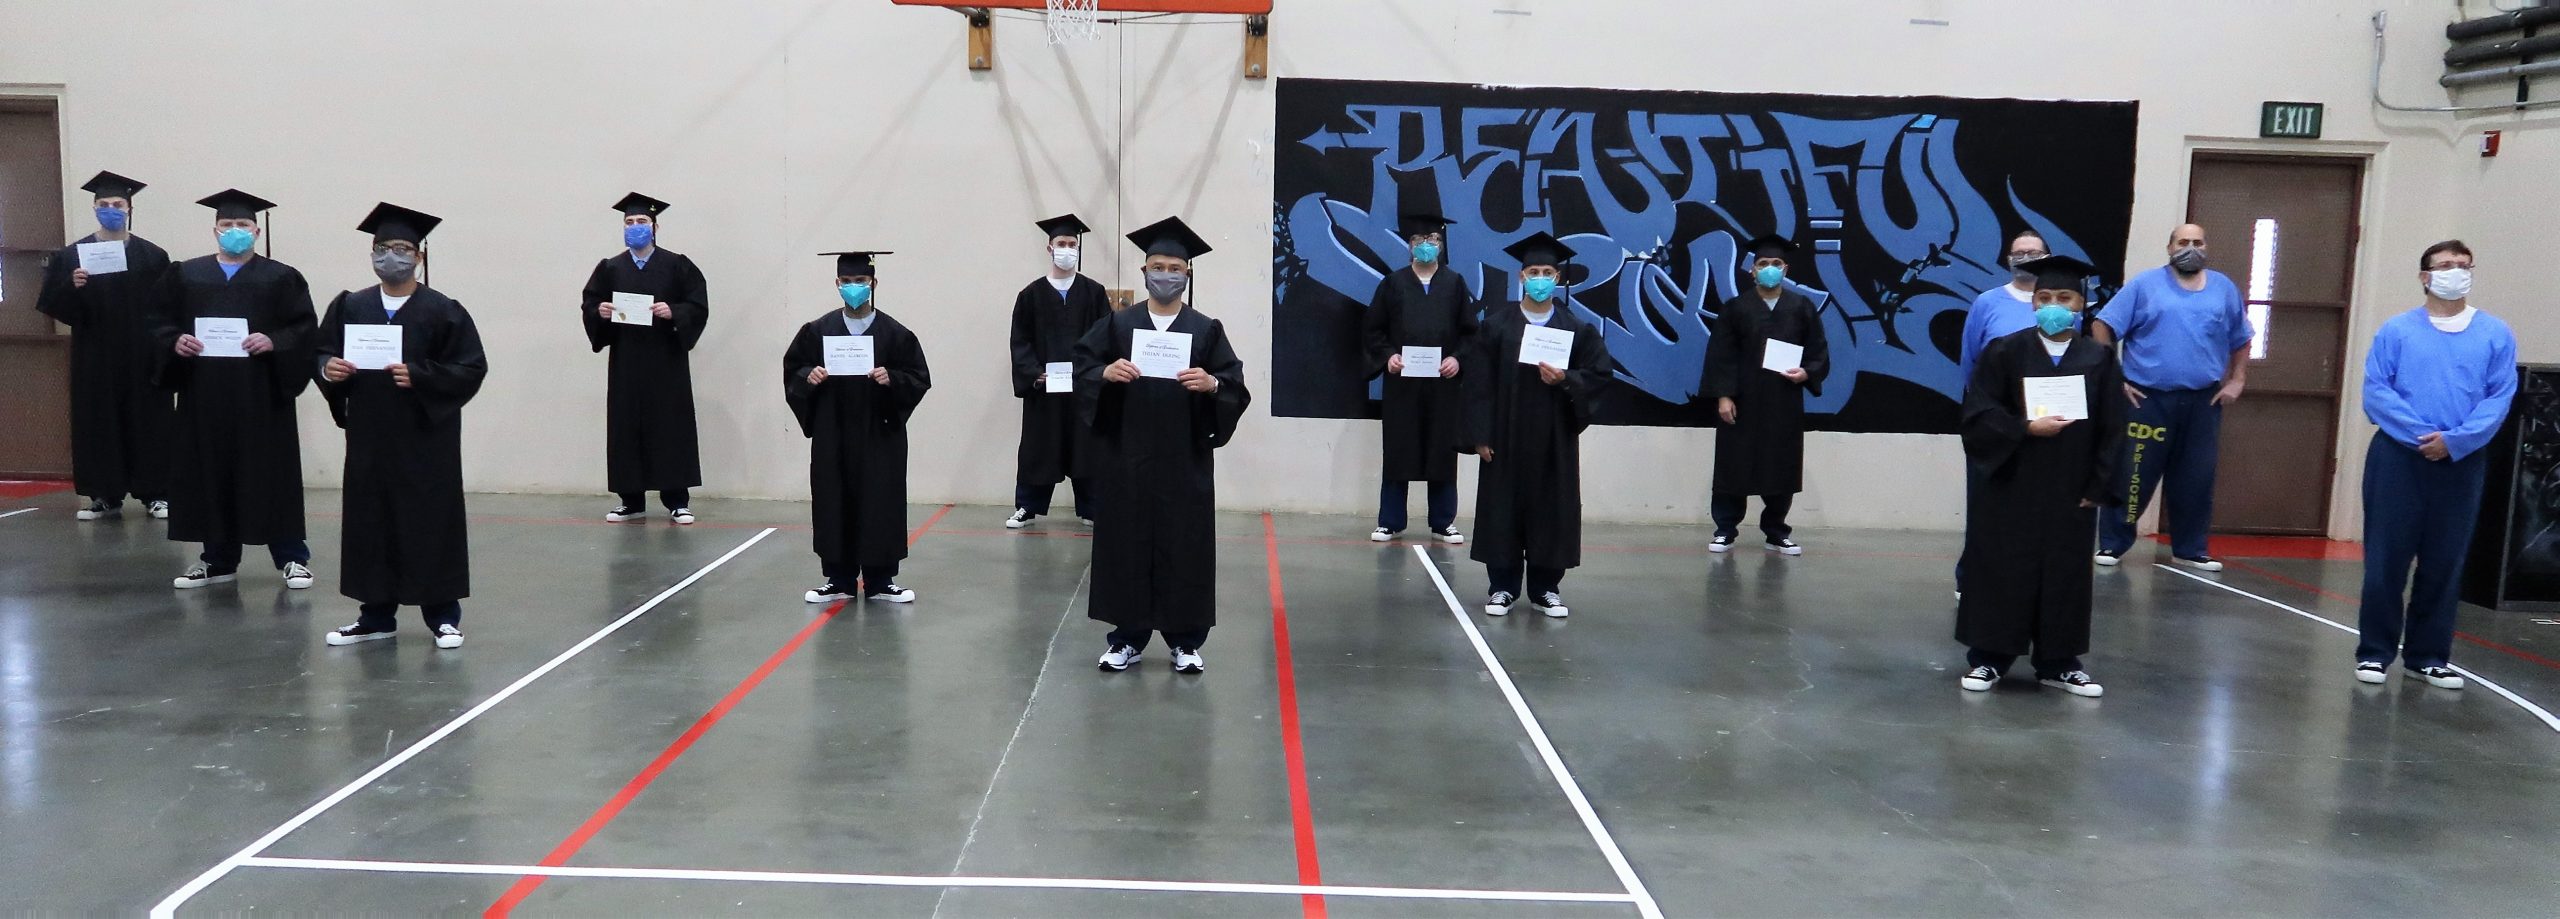 Incarcerated students hold diplomas.